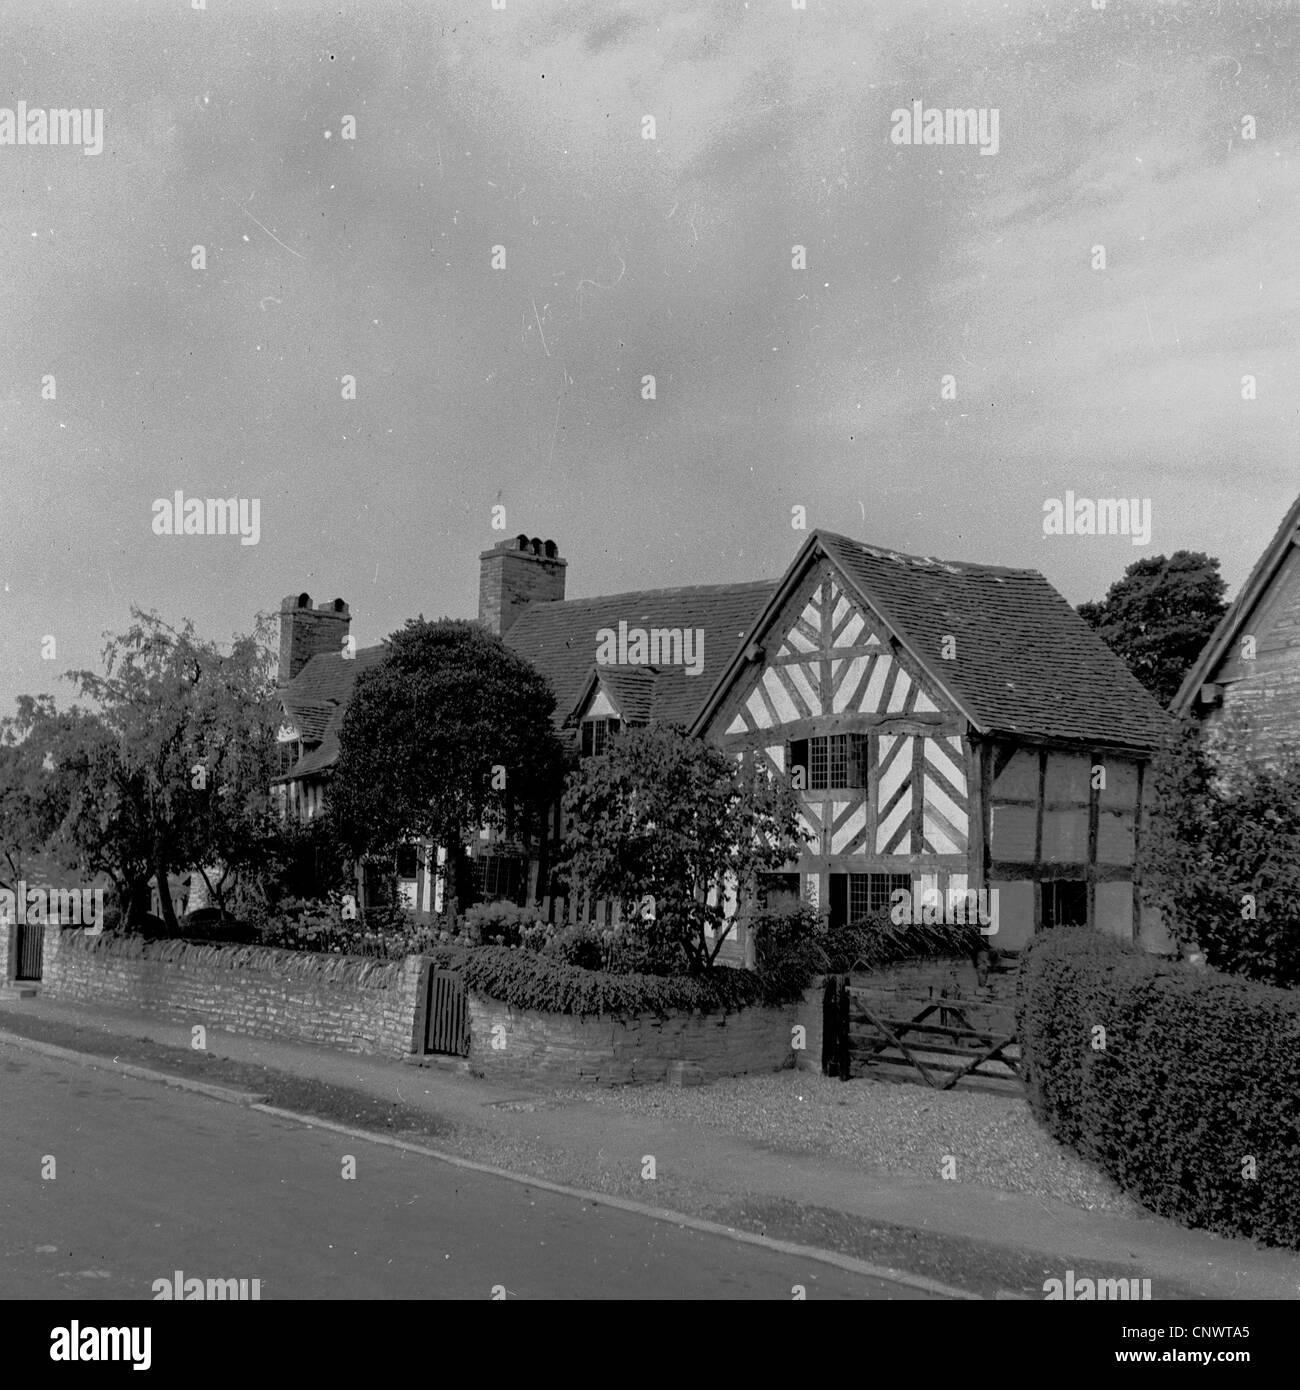 Historisches Bild von der 1950er Jahre, zeigt Wilmcote, bekannt als der Geburtsort von William Shakespeare. Stockfoto